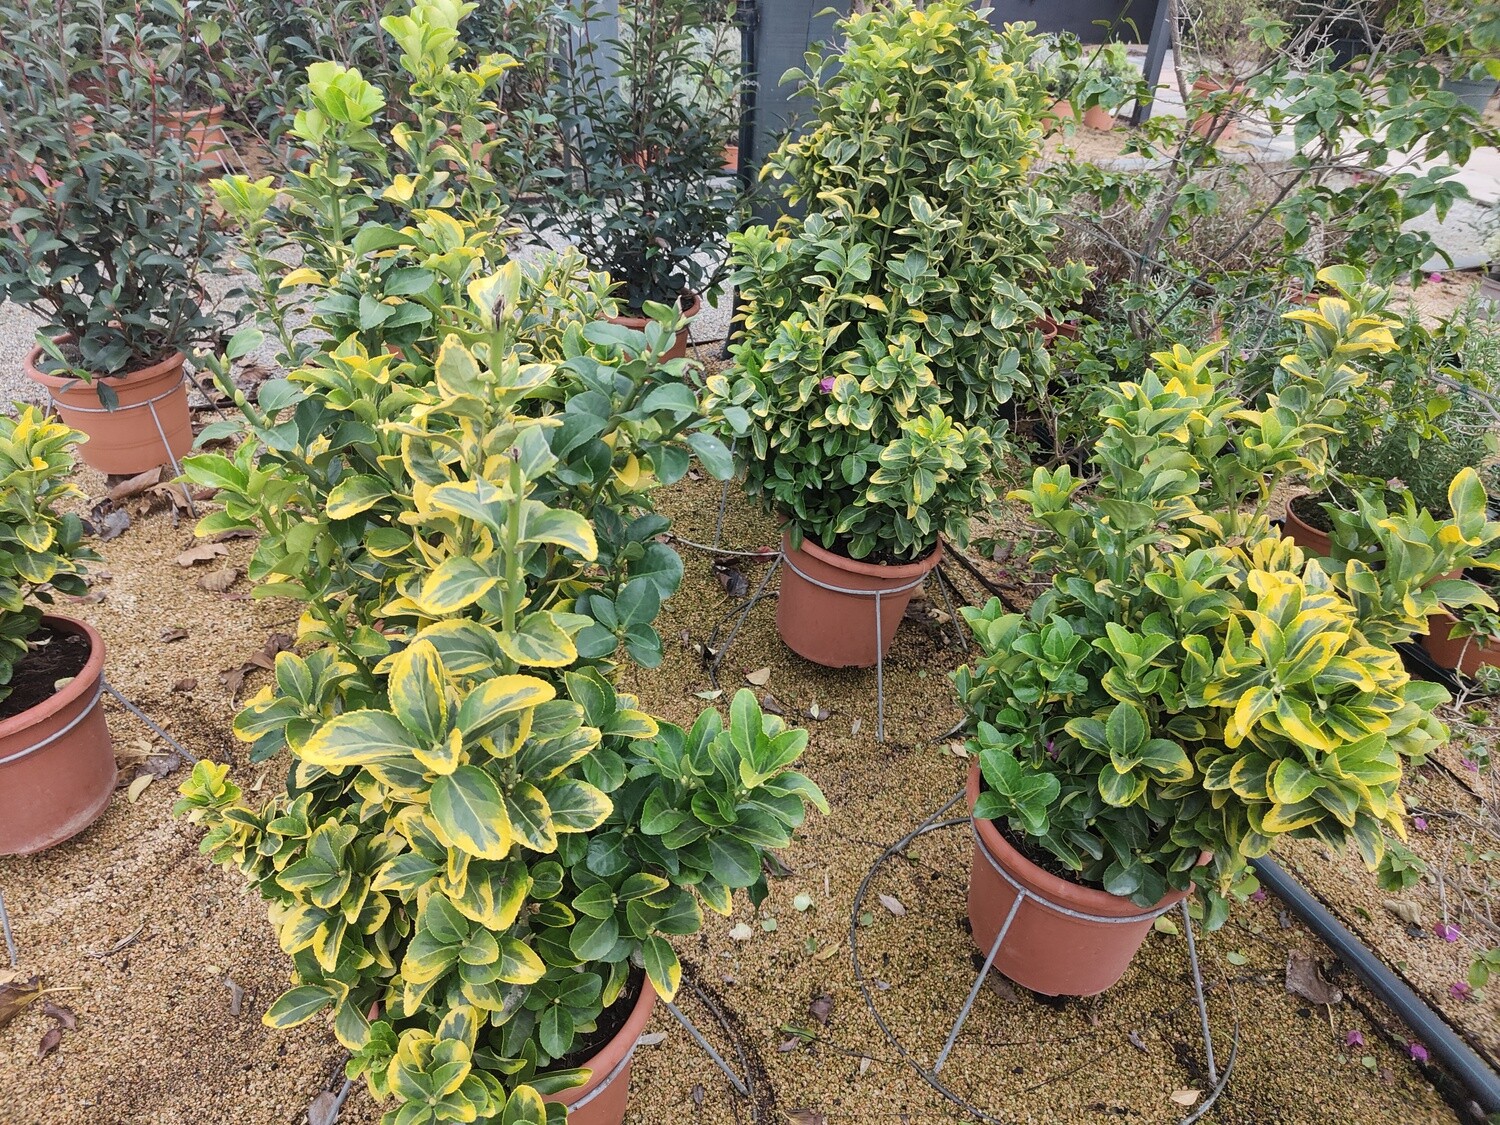 "Amaplant Evonimo" arbusto con hojas suaves ovaladas y detalles en color amarillo, resistente y de pocos cuidados 90-100 cm 10 L (frondoso) - Exterior a pleno sol o media sombra - ENVIO INCLUIDO